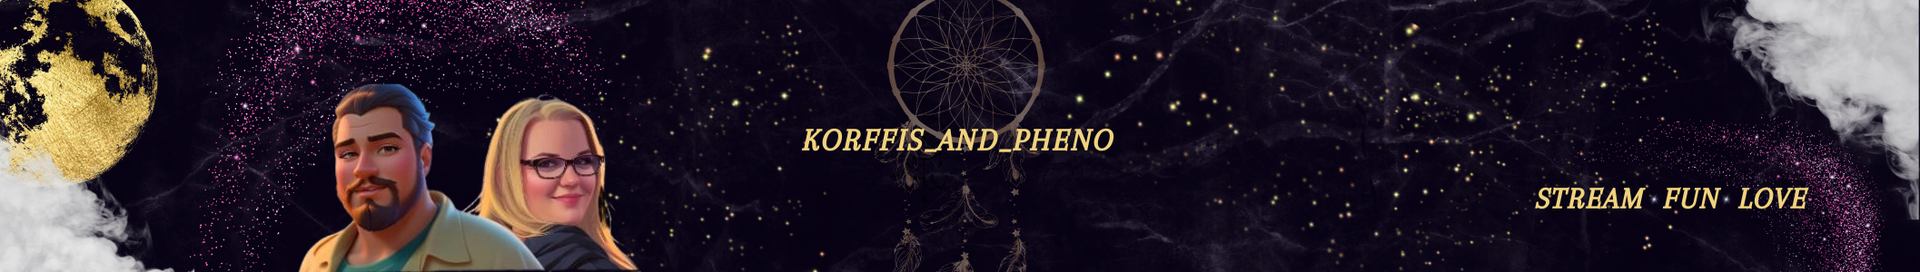 korffis_and_pheno